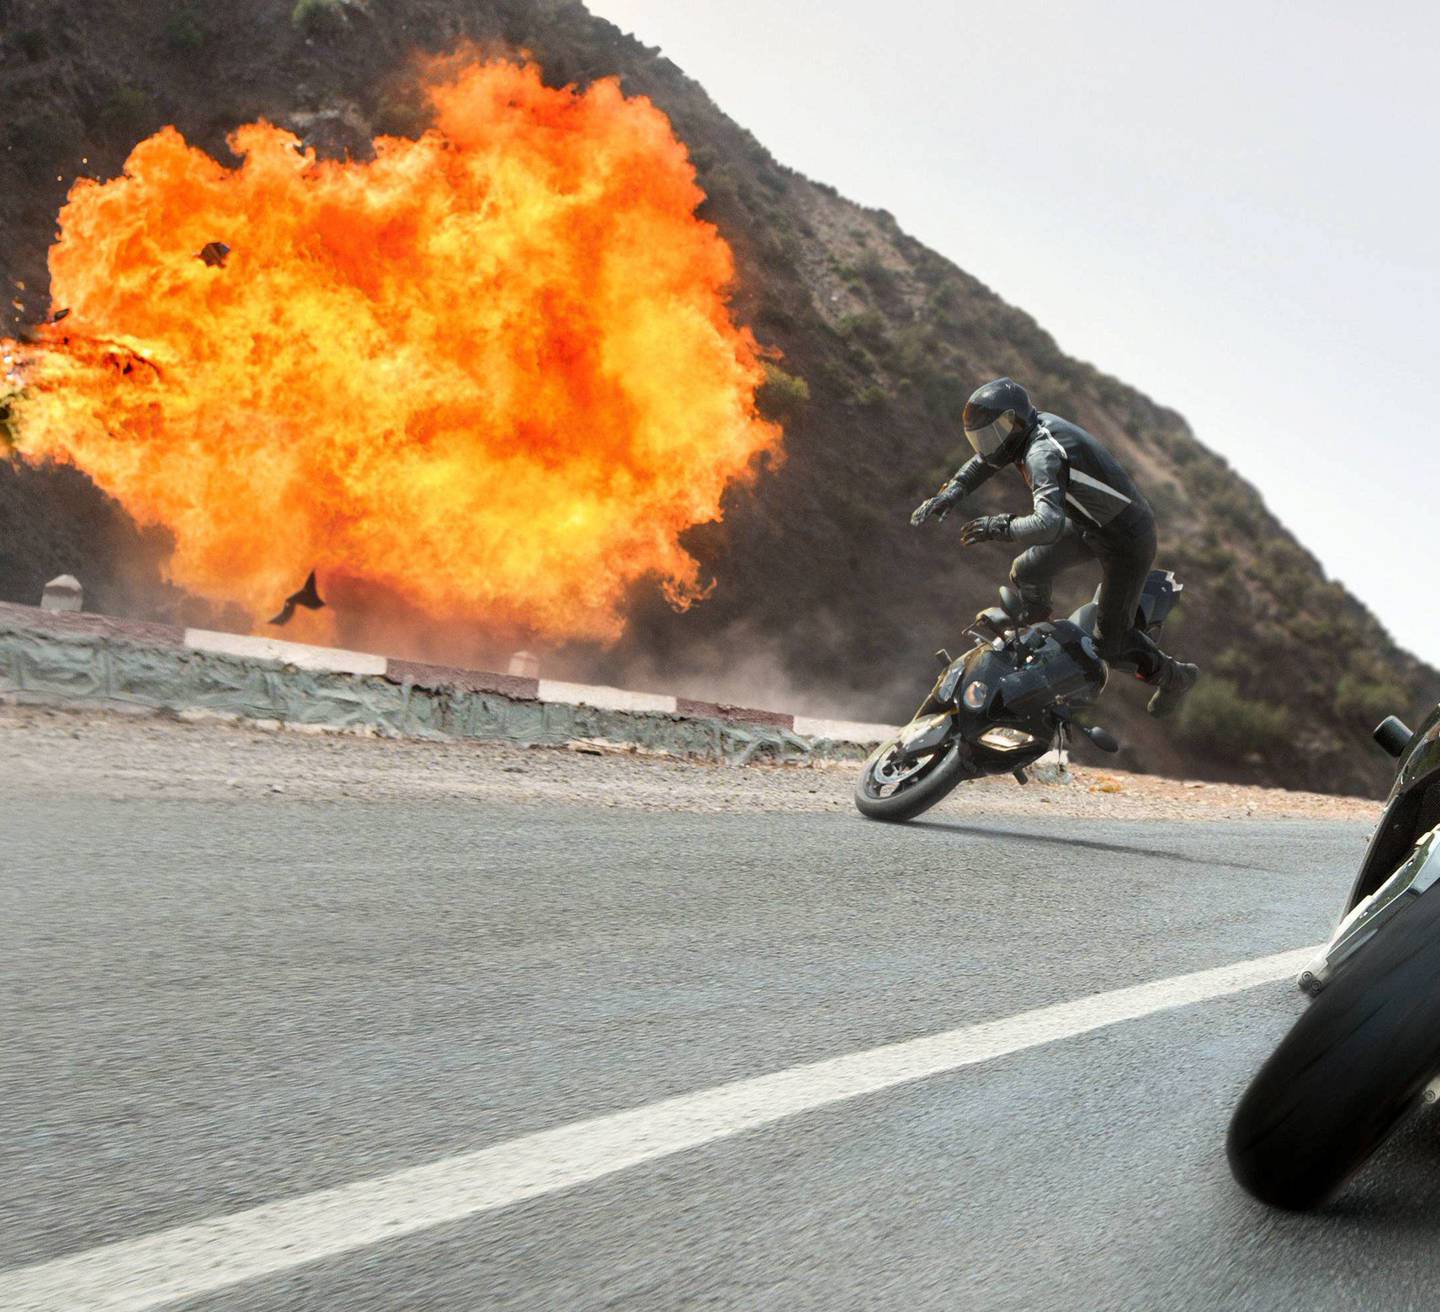 Tom Cruises varemerke i disse filmene har blitt å gjøre stadig mer krevende og farligere stunt selv.